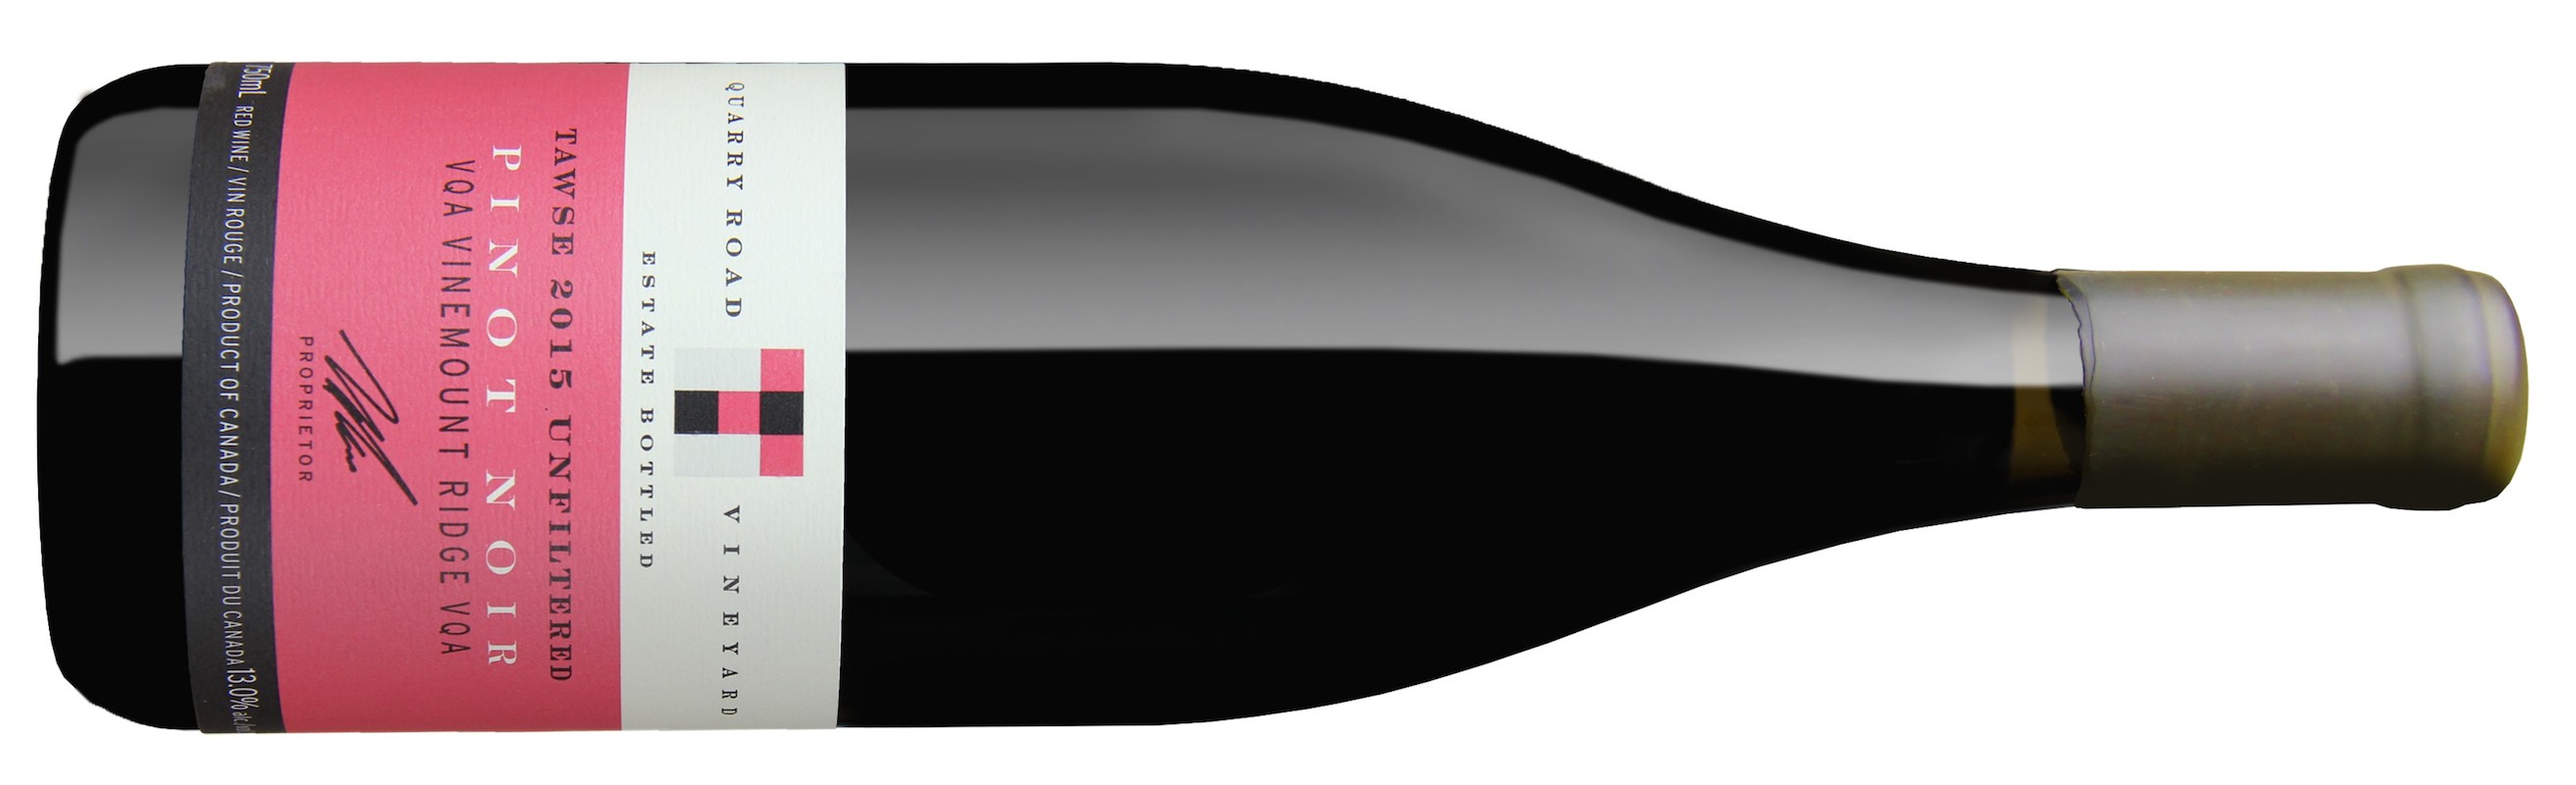 a2015 Unfiltered Pinot Noir